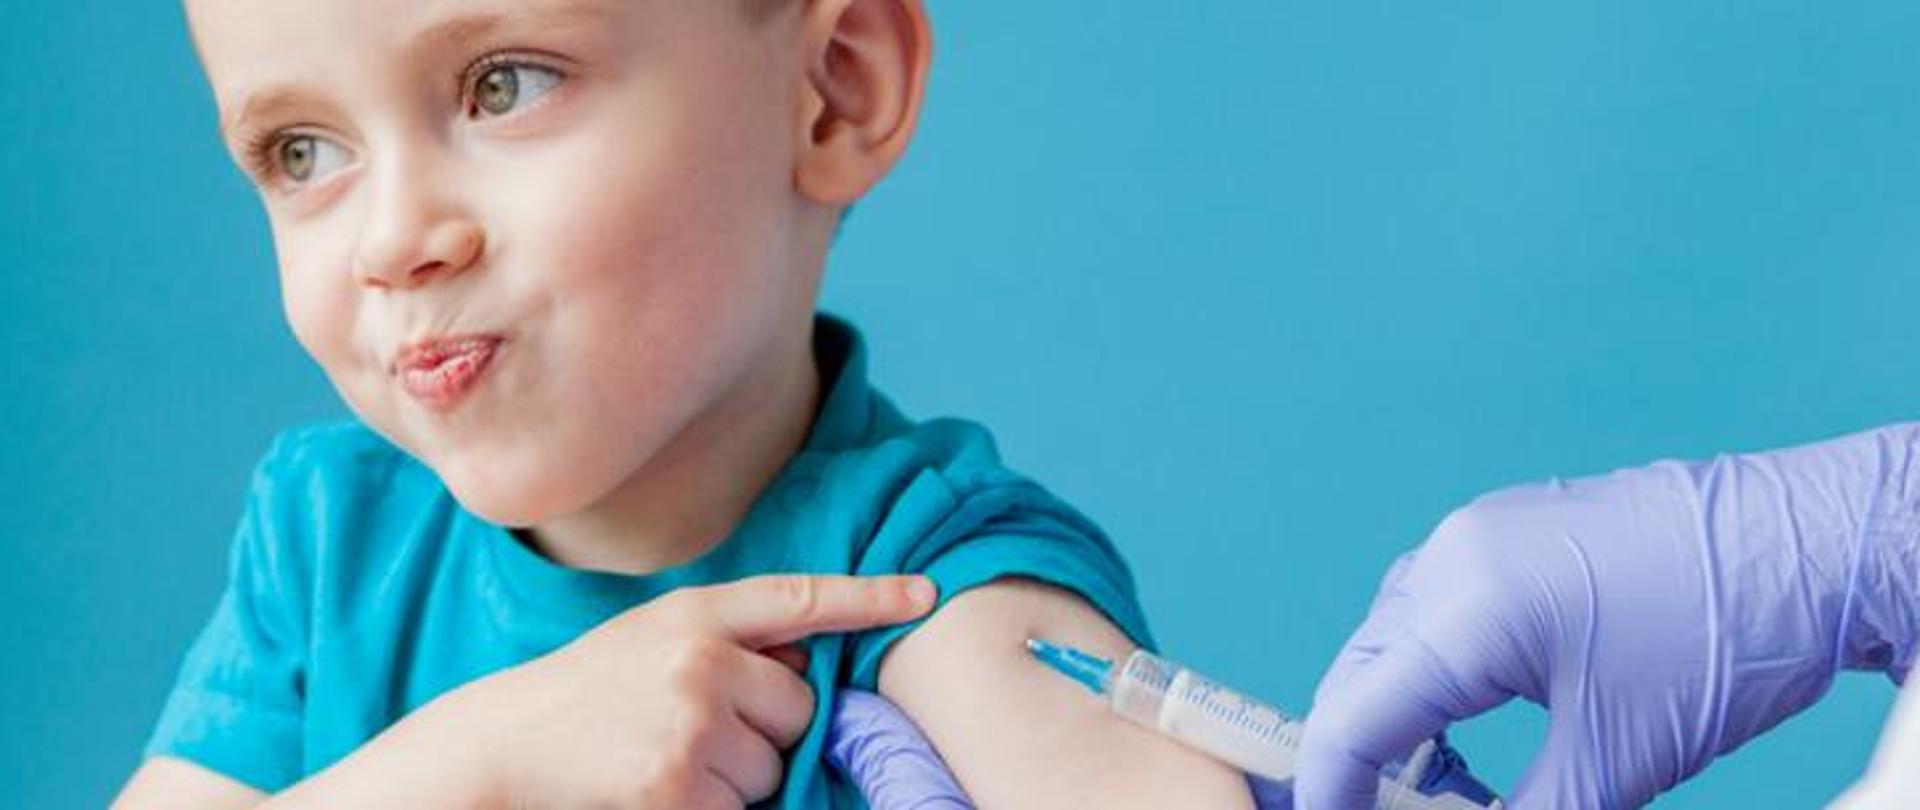 na niebieskim tle dziecko wskazuje ręką przedramię w którym podawana jest szczepionka